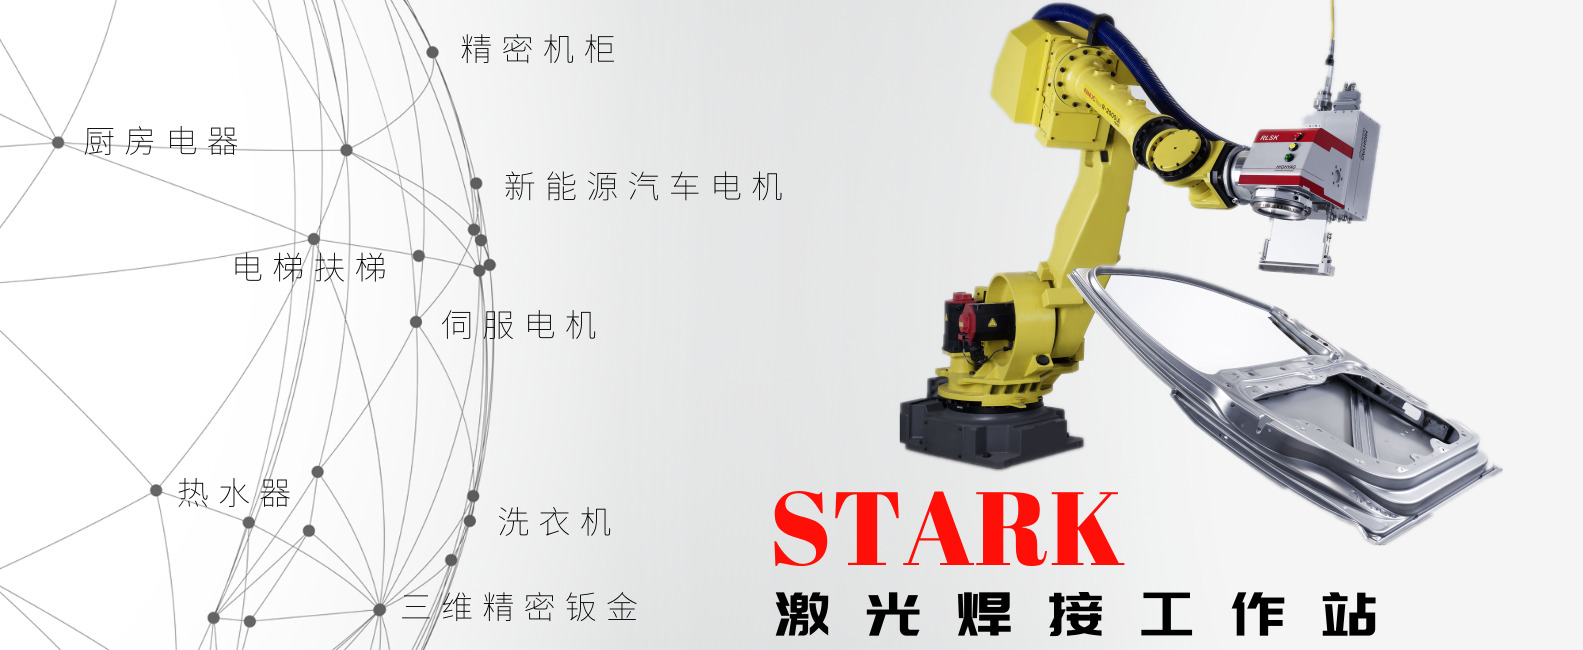 STARK激光焊接工作站.jpg